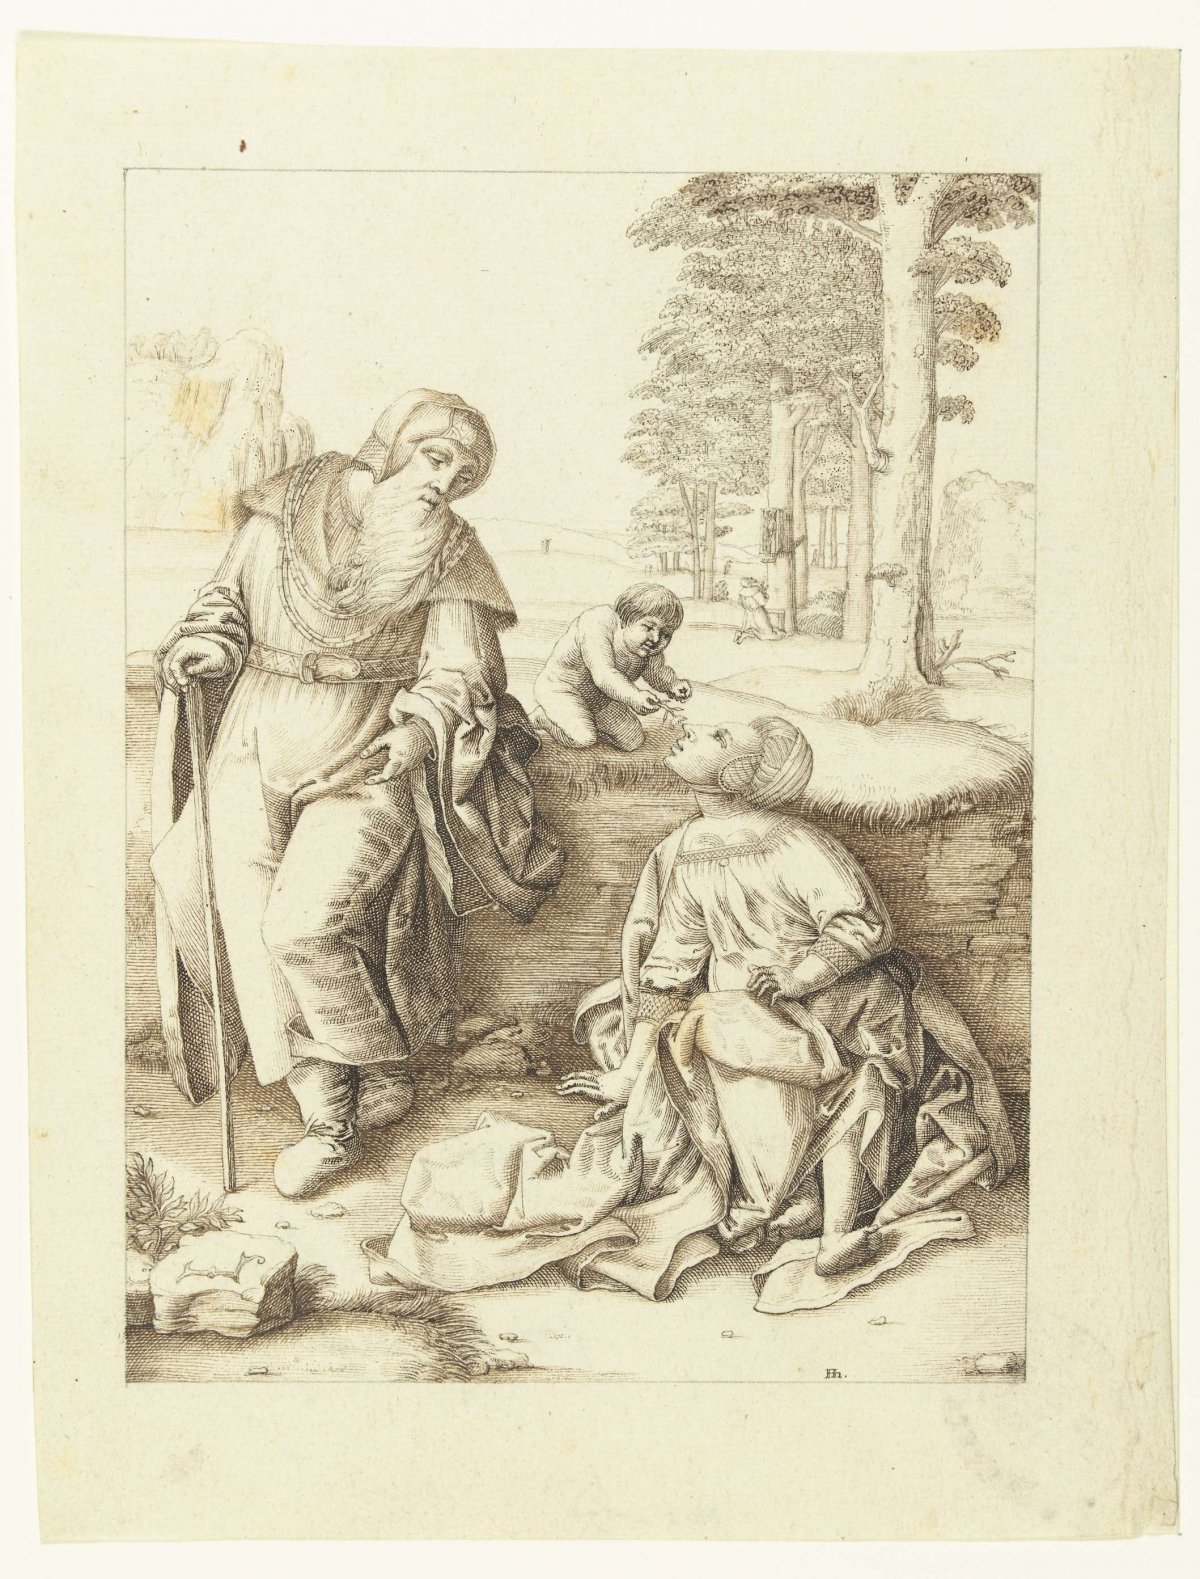 The holy family, Hendrick Hondius (I), 1583 - 1650